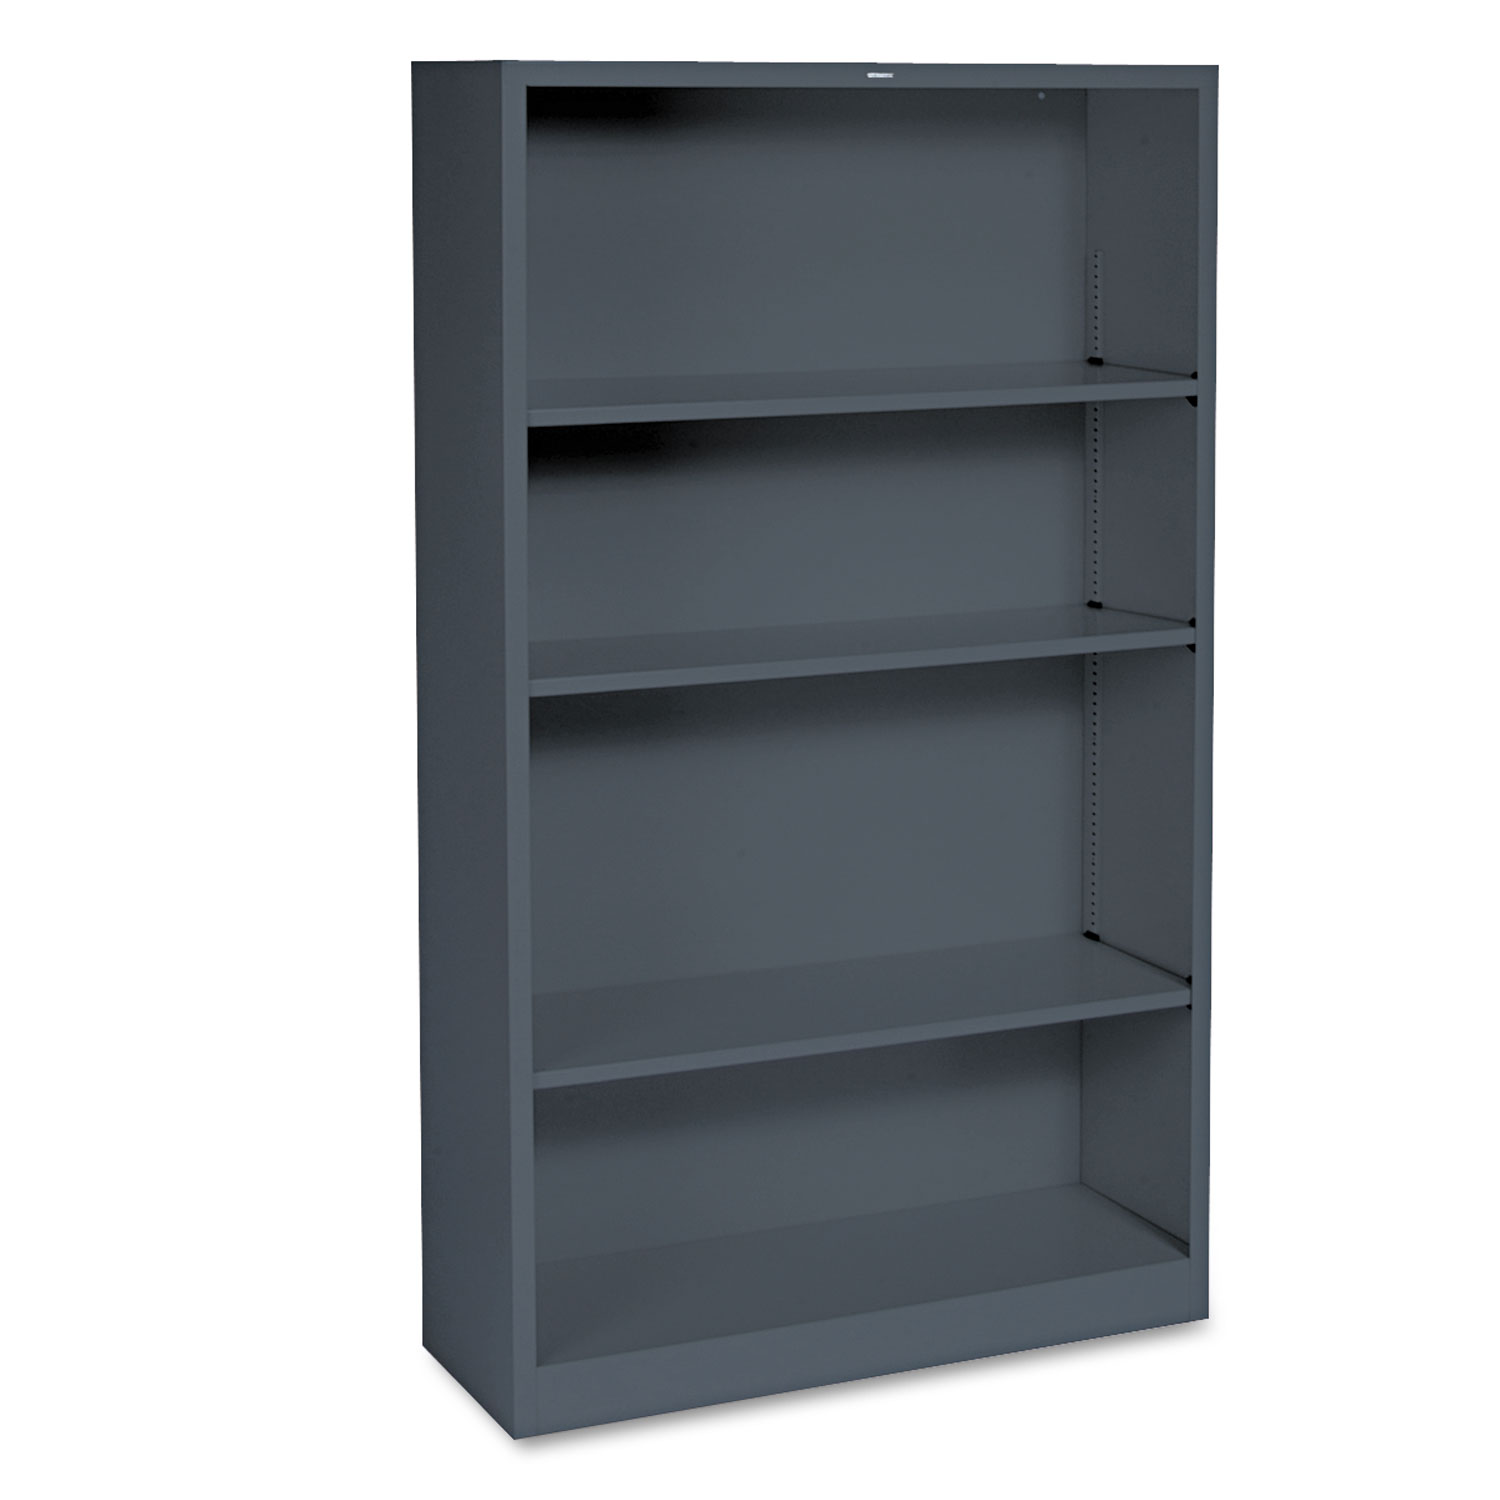  HON HS60ABC.S Metal Bookcase, Four-Shelf, 34-1/2w x 12-5/8d x 59h, Charcoal (HONS60ABCS) 